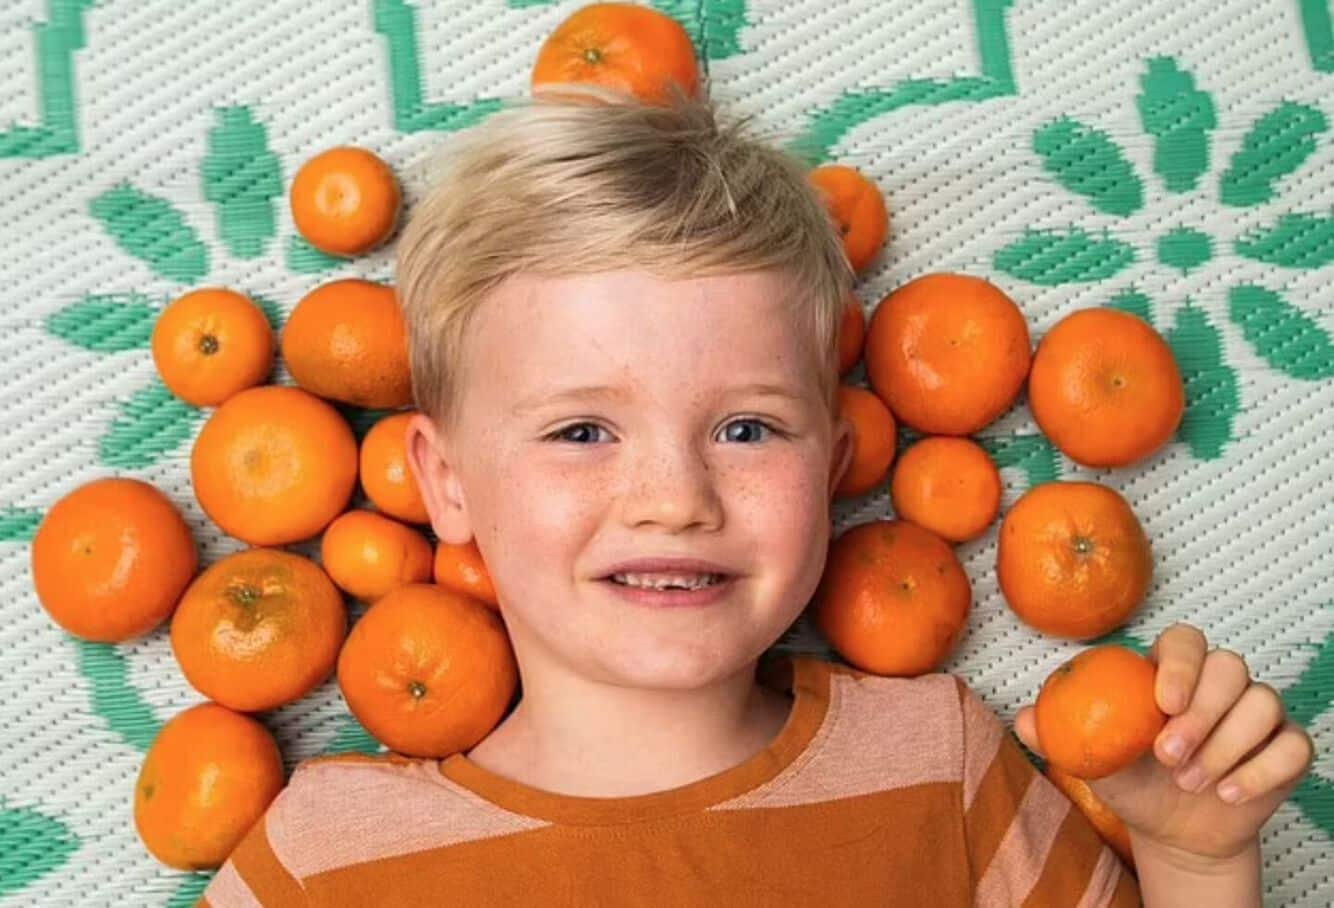 À force de manger trop d'oranges, un enfant se transforme en Simpson